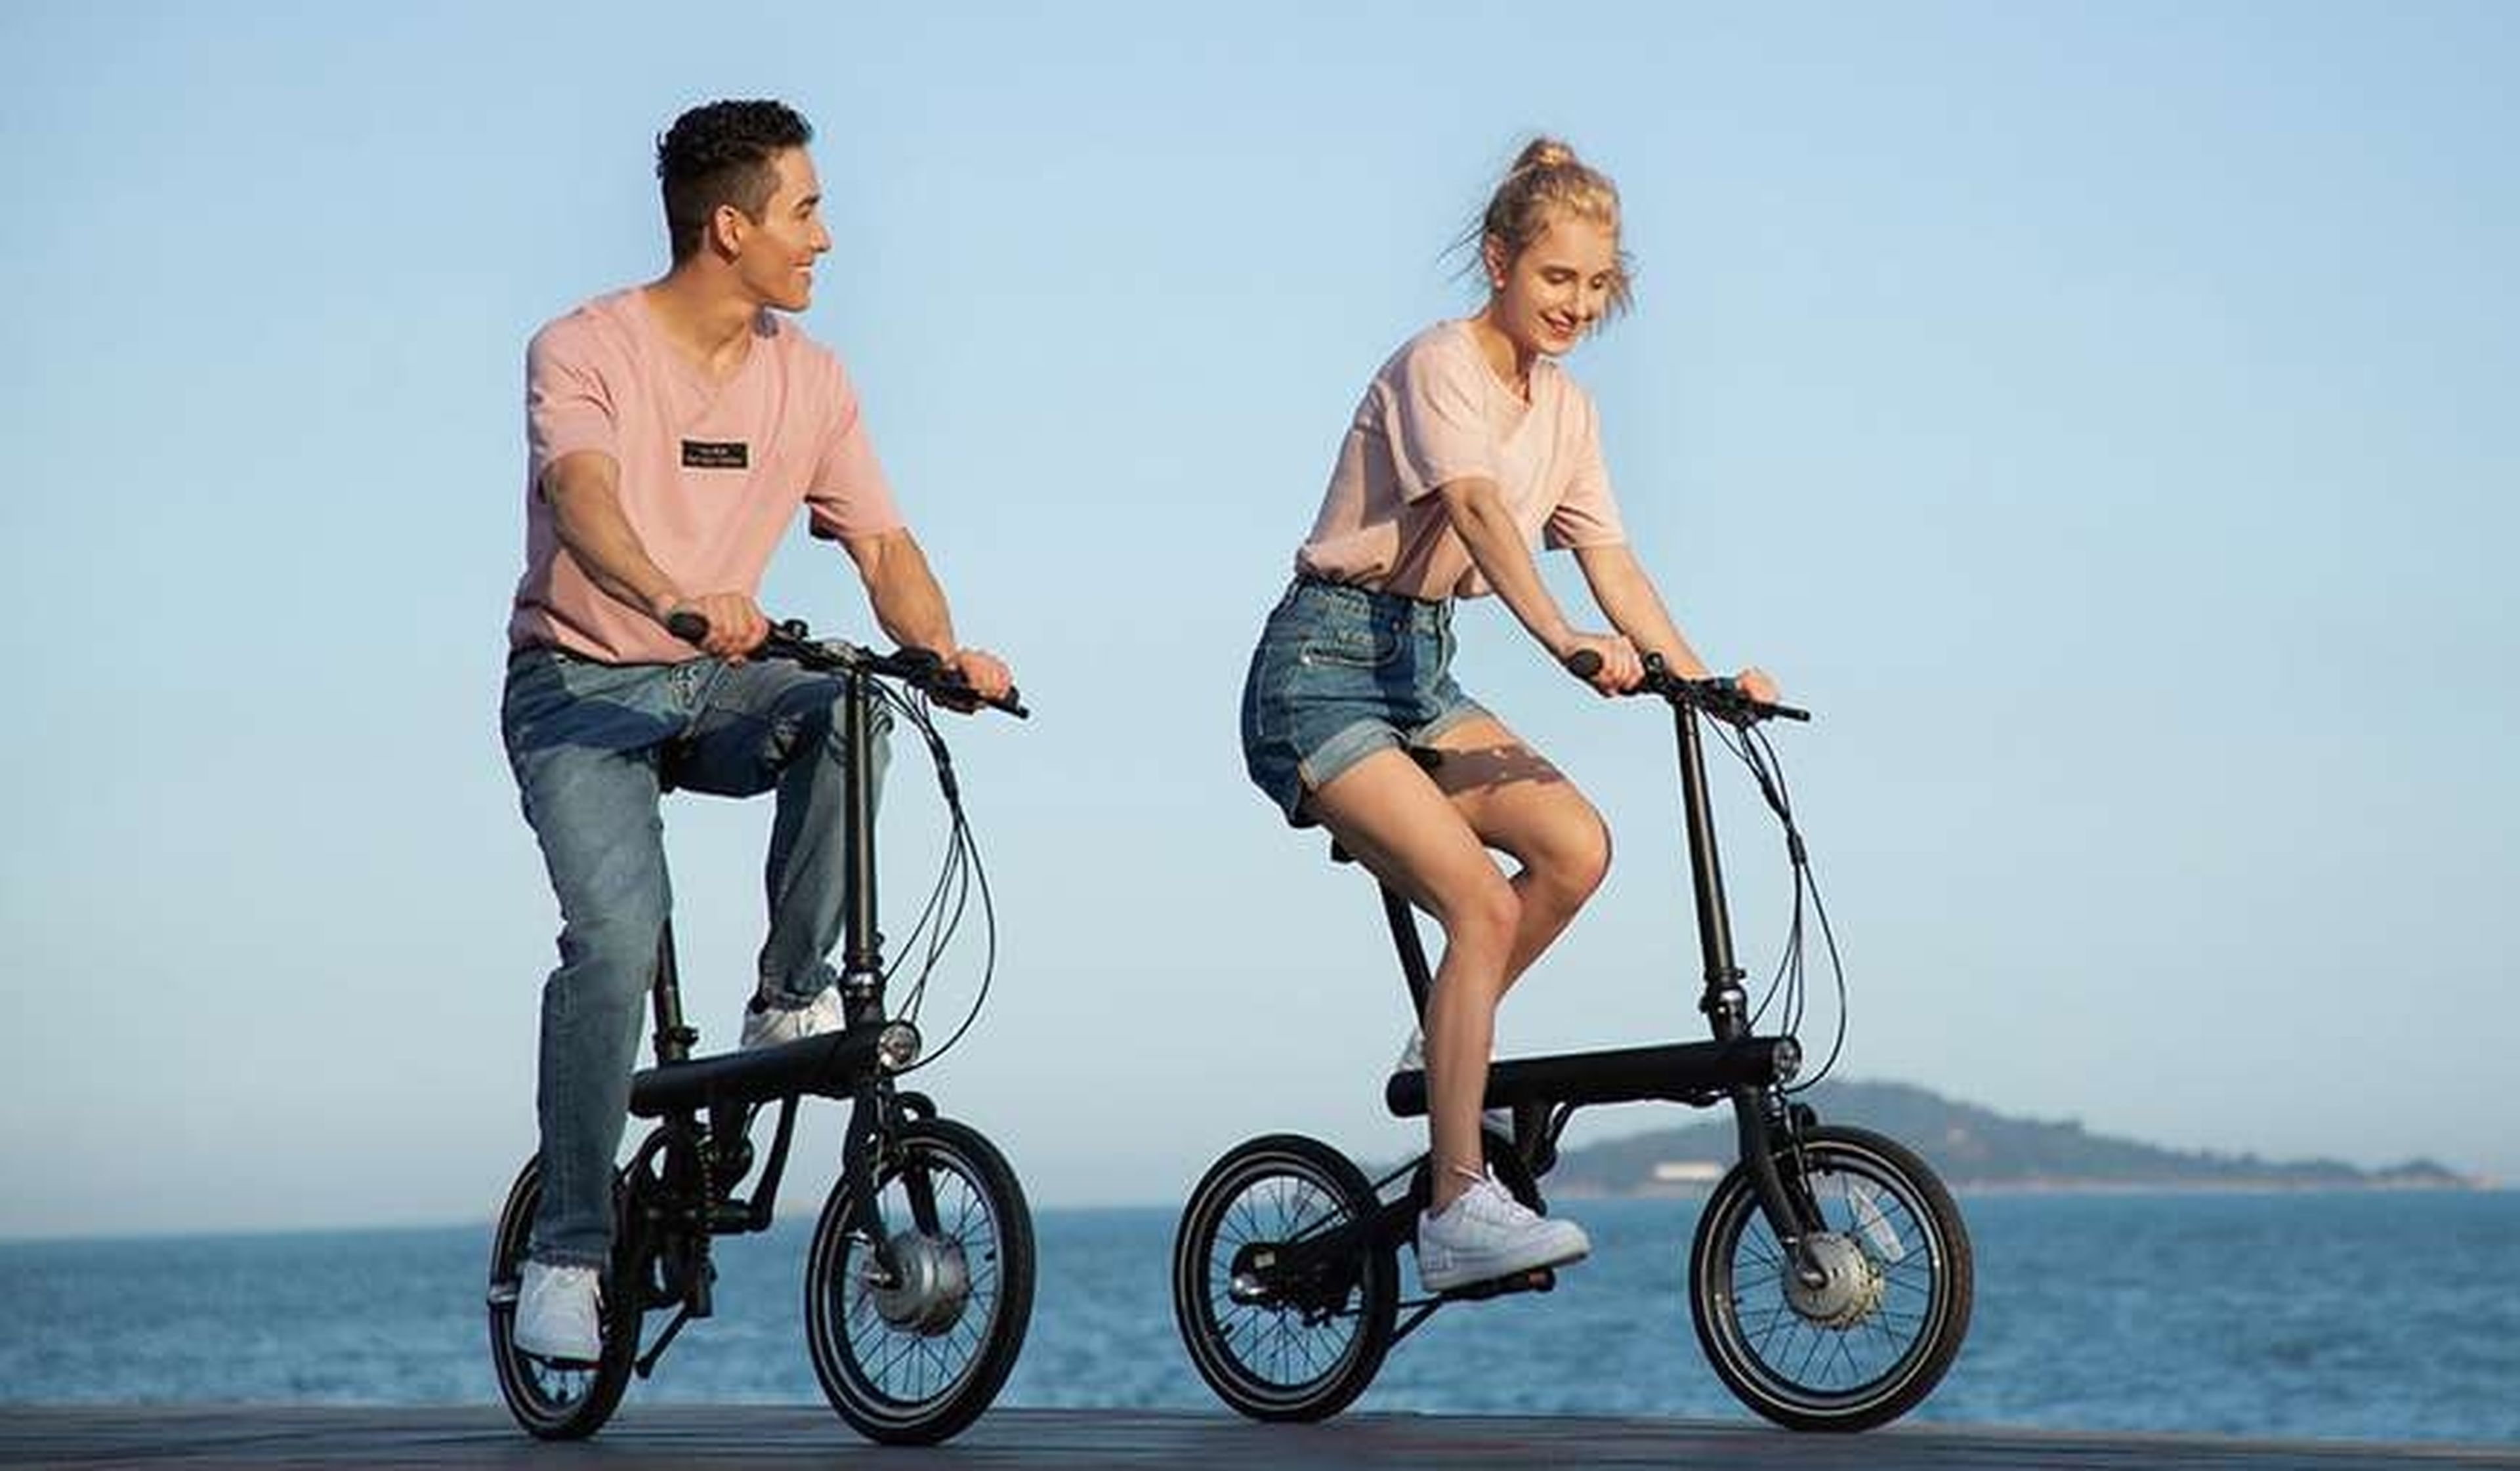 La bicicleta eléctrica plegable de Xiaomi recibe un descuento de 500 euros y se queda precio de bici estándar